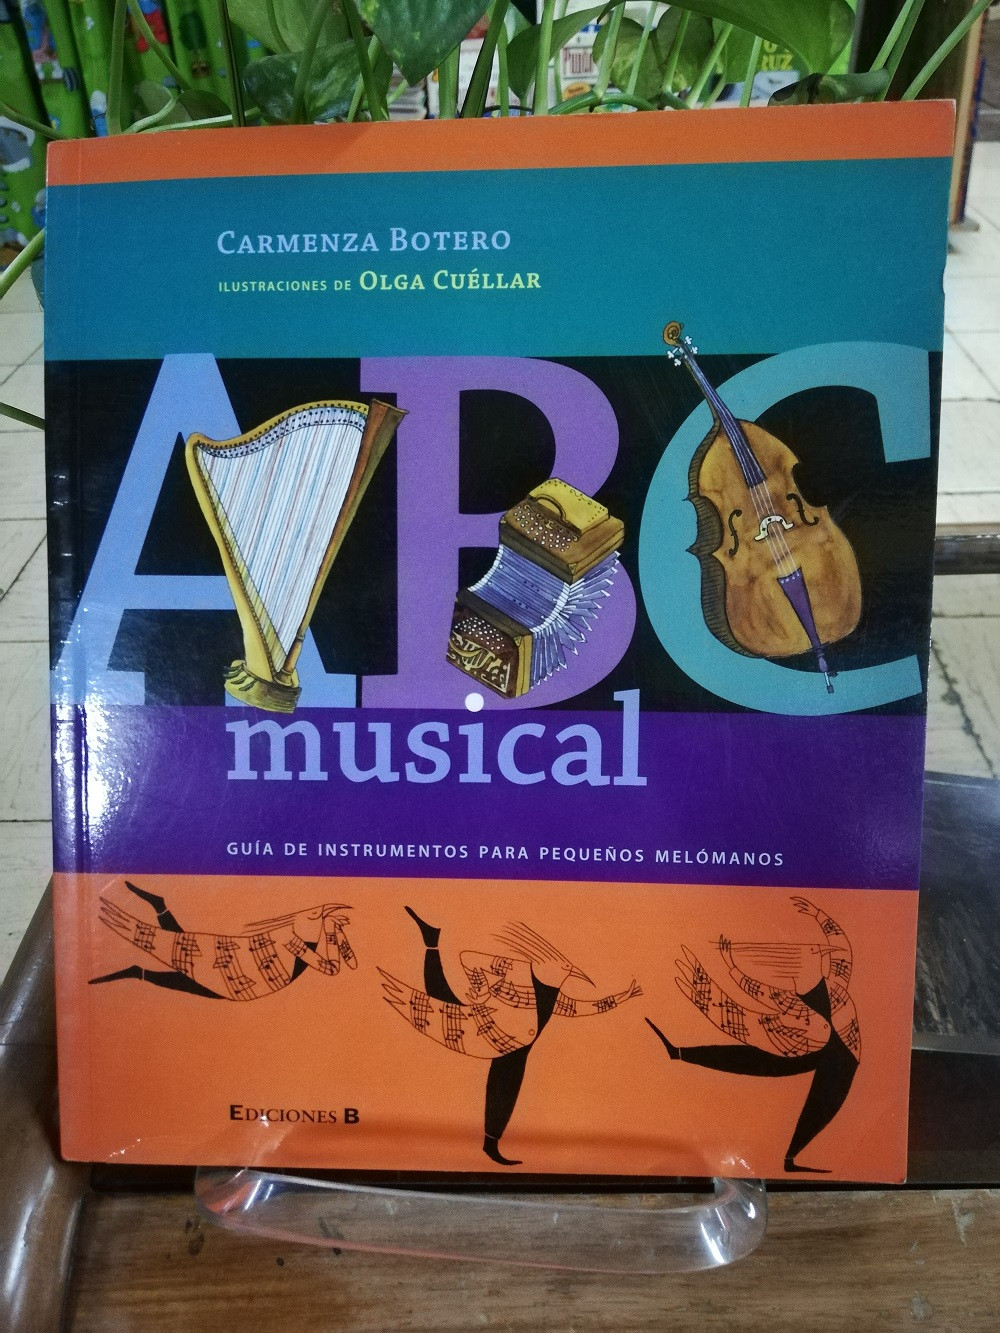 Imagen ABC MUSICAL, GUIA DE INSTRUMENTOS PARA PEQUEÑOS MELOMANOS - CARMENZA BOTERO 1